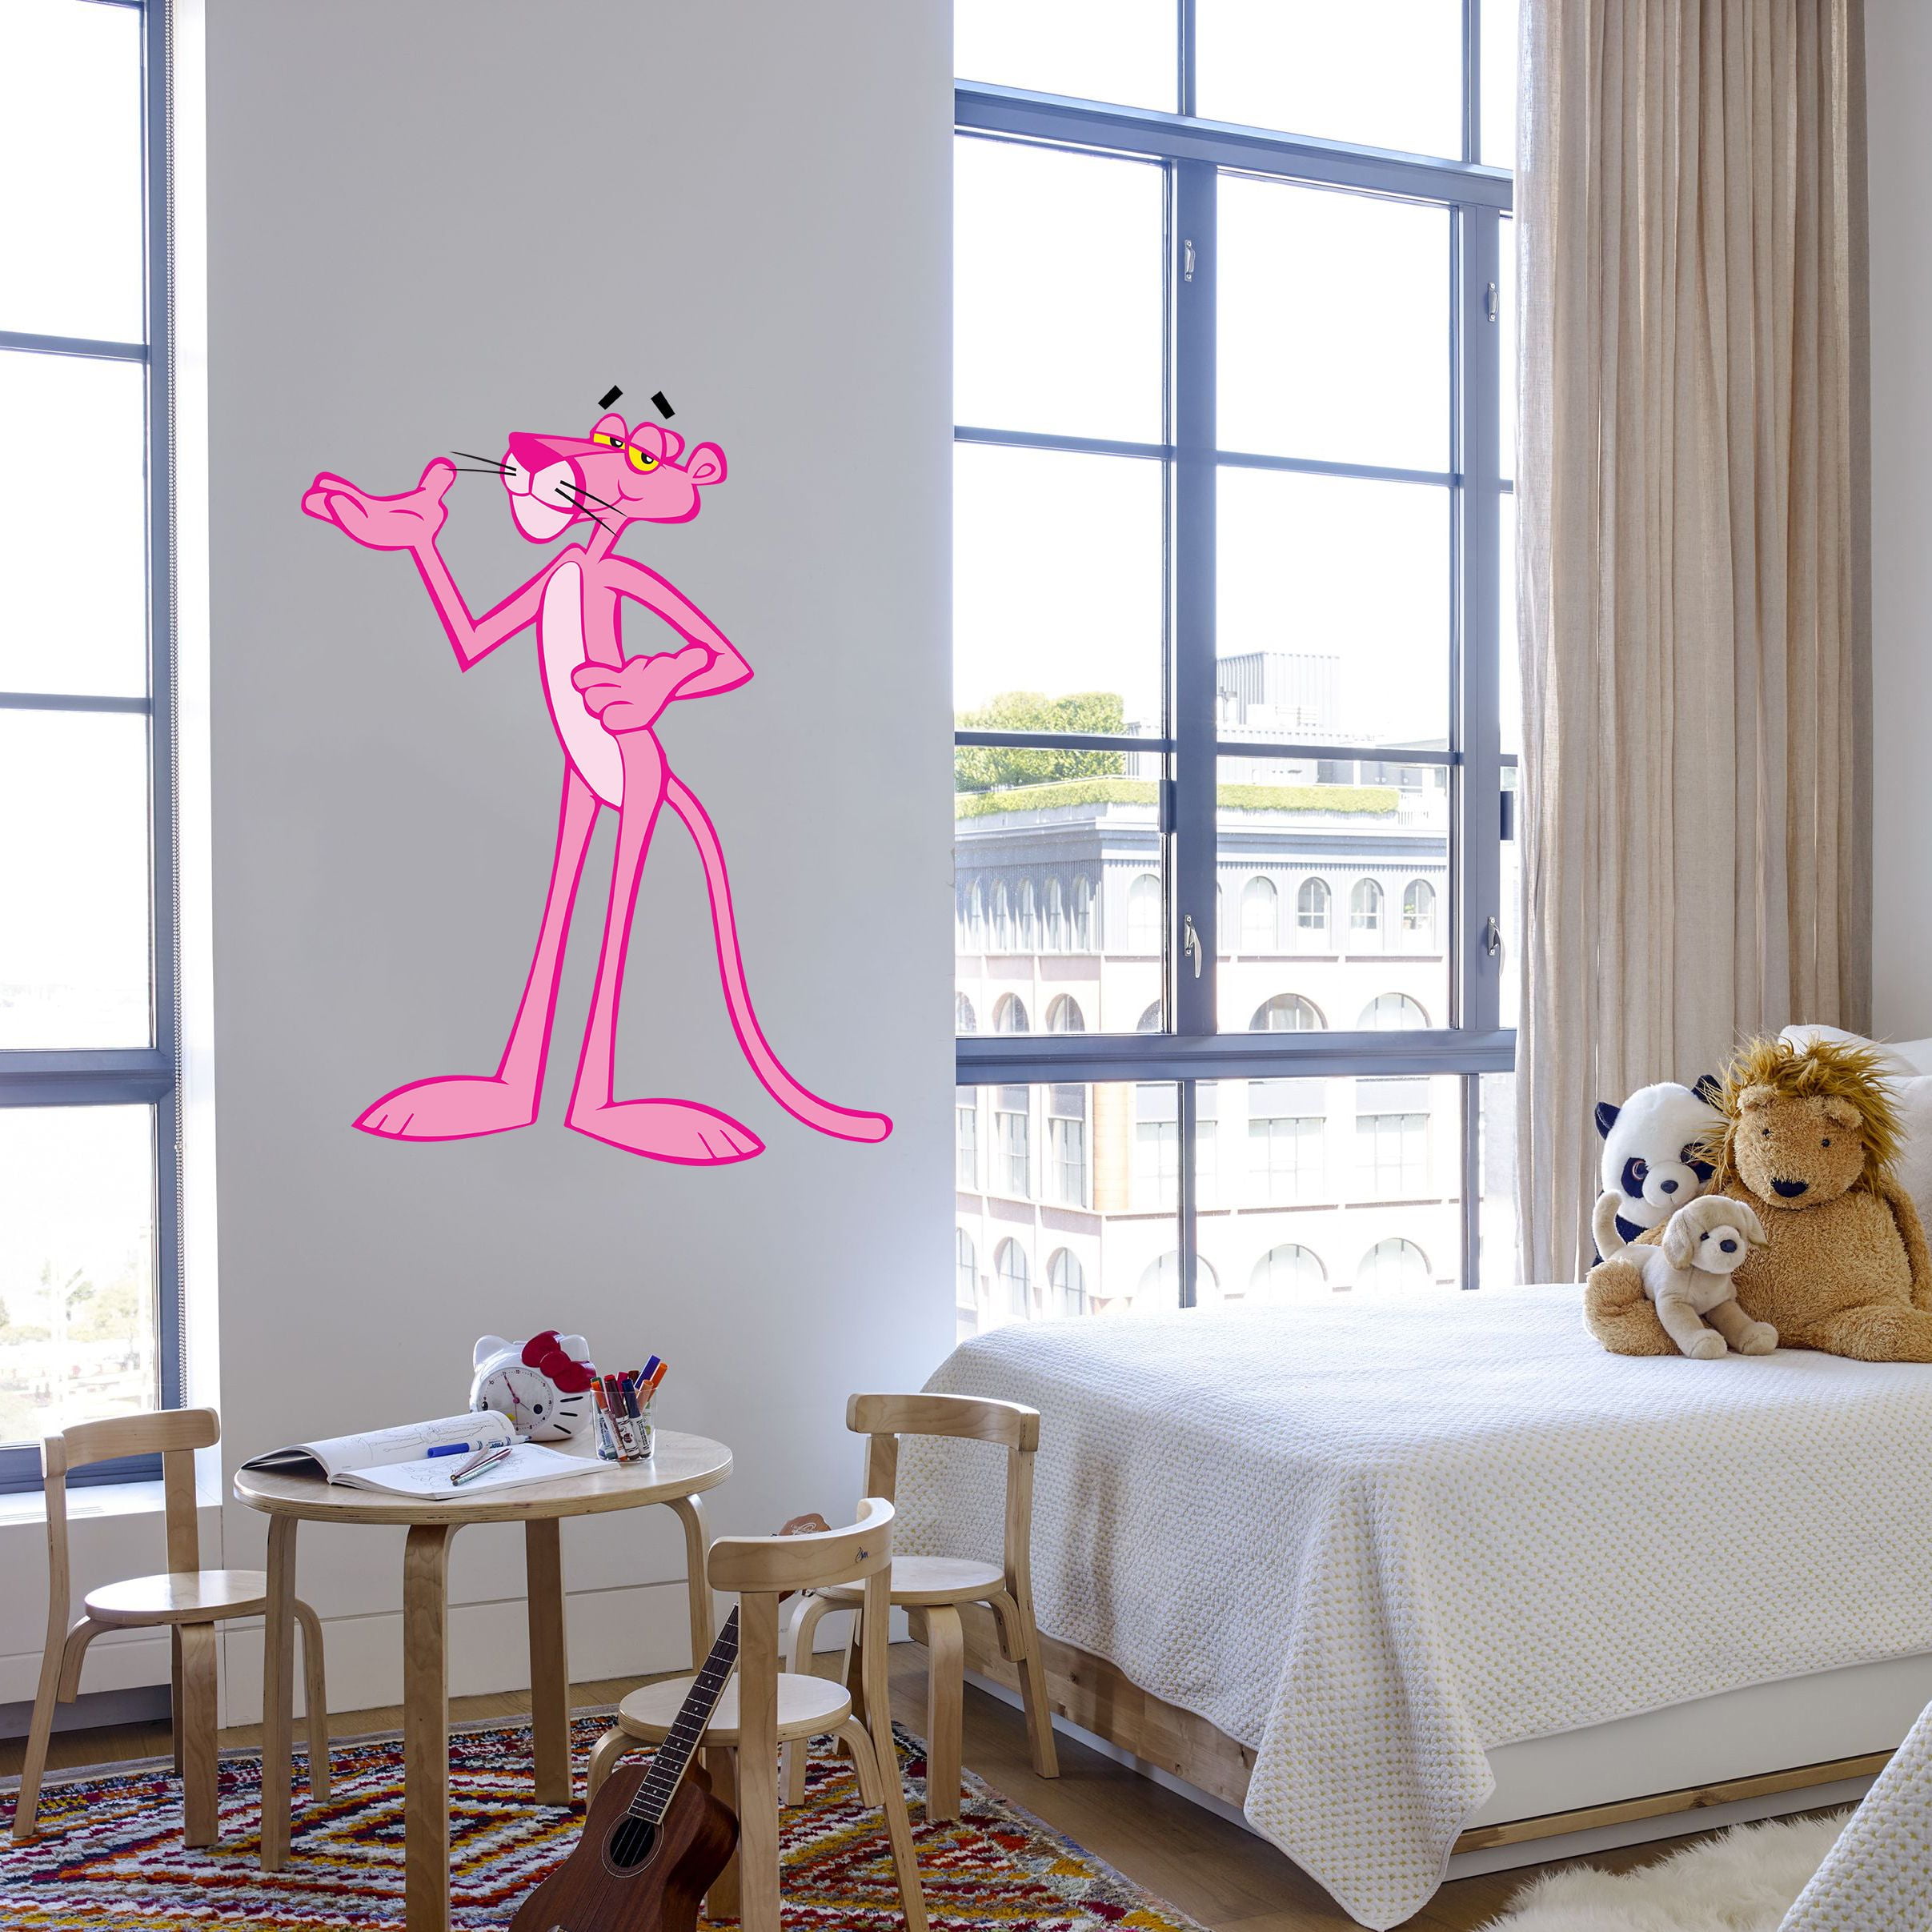 5"x3.4" Pink Panther scrapbooking bumper sticker wall decor vinyl decal 